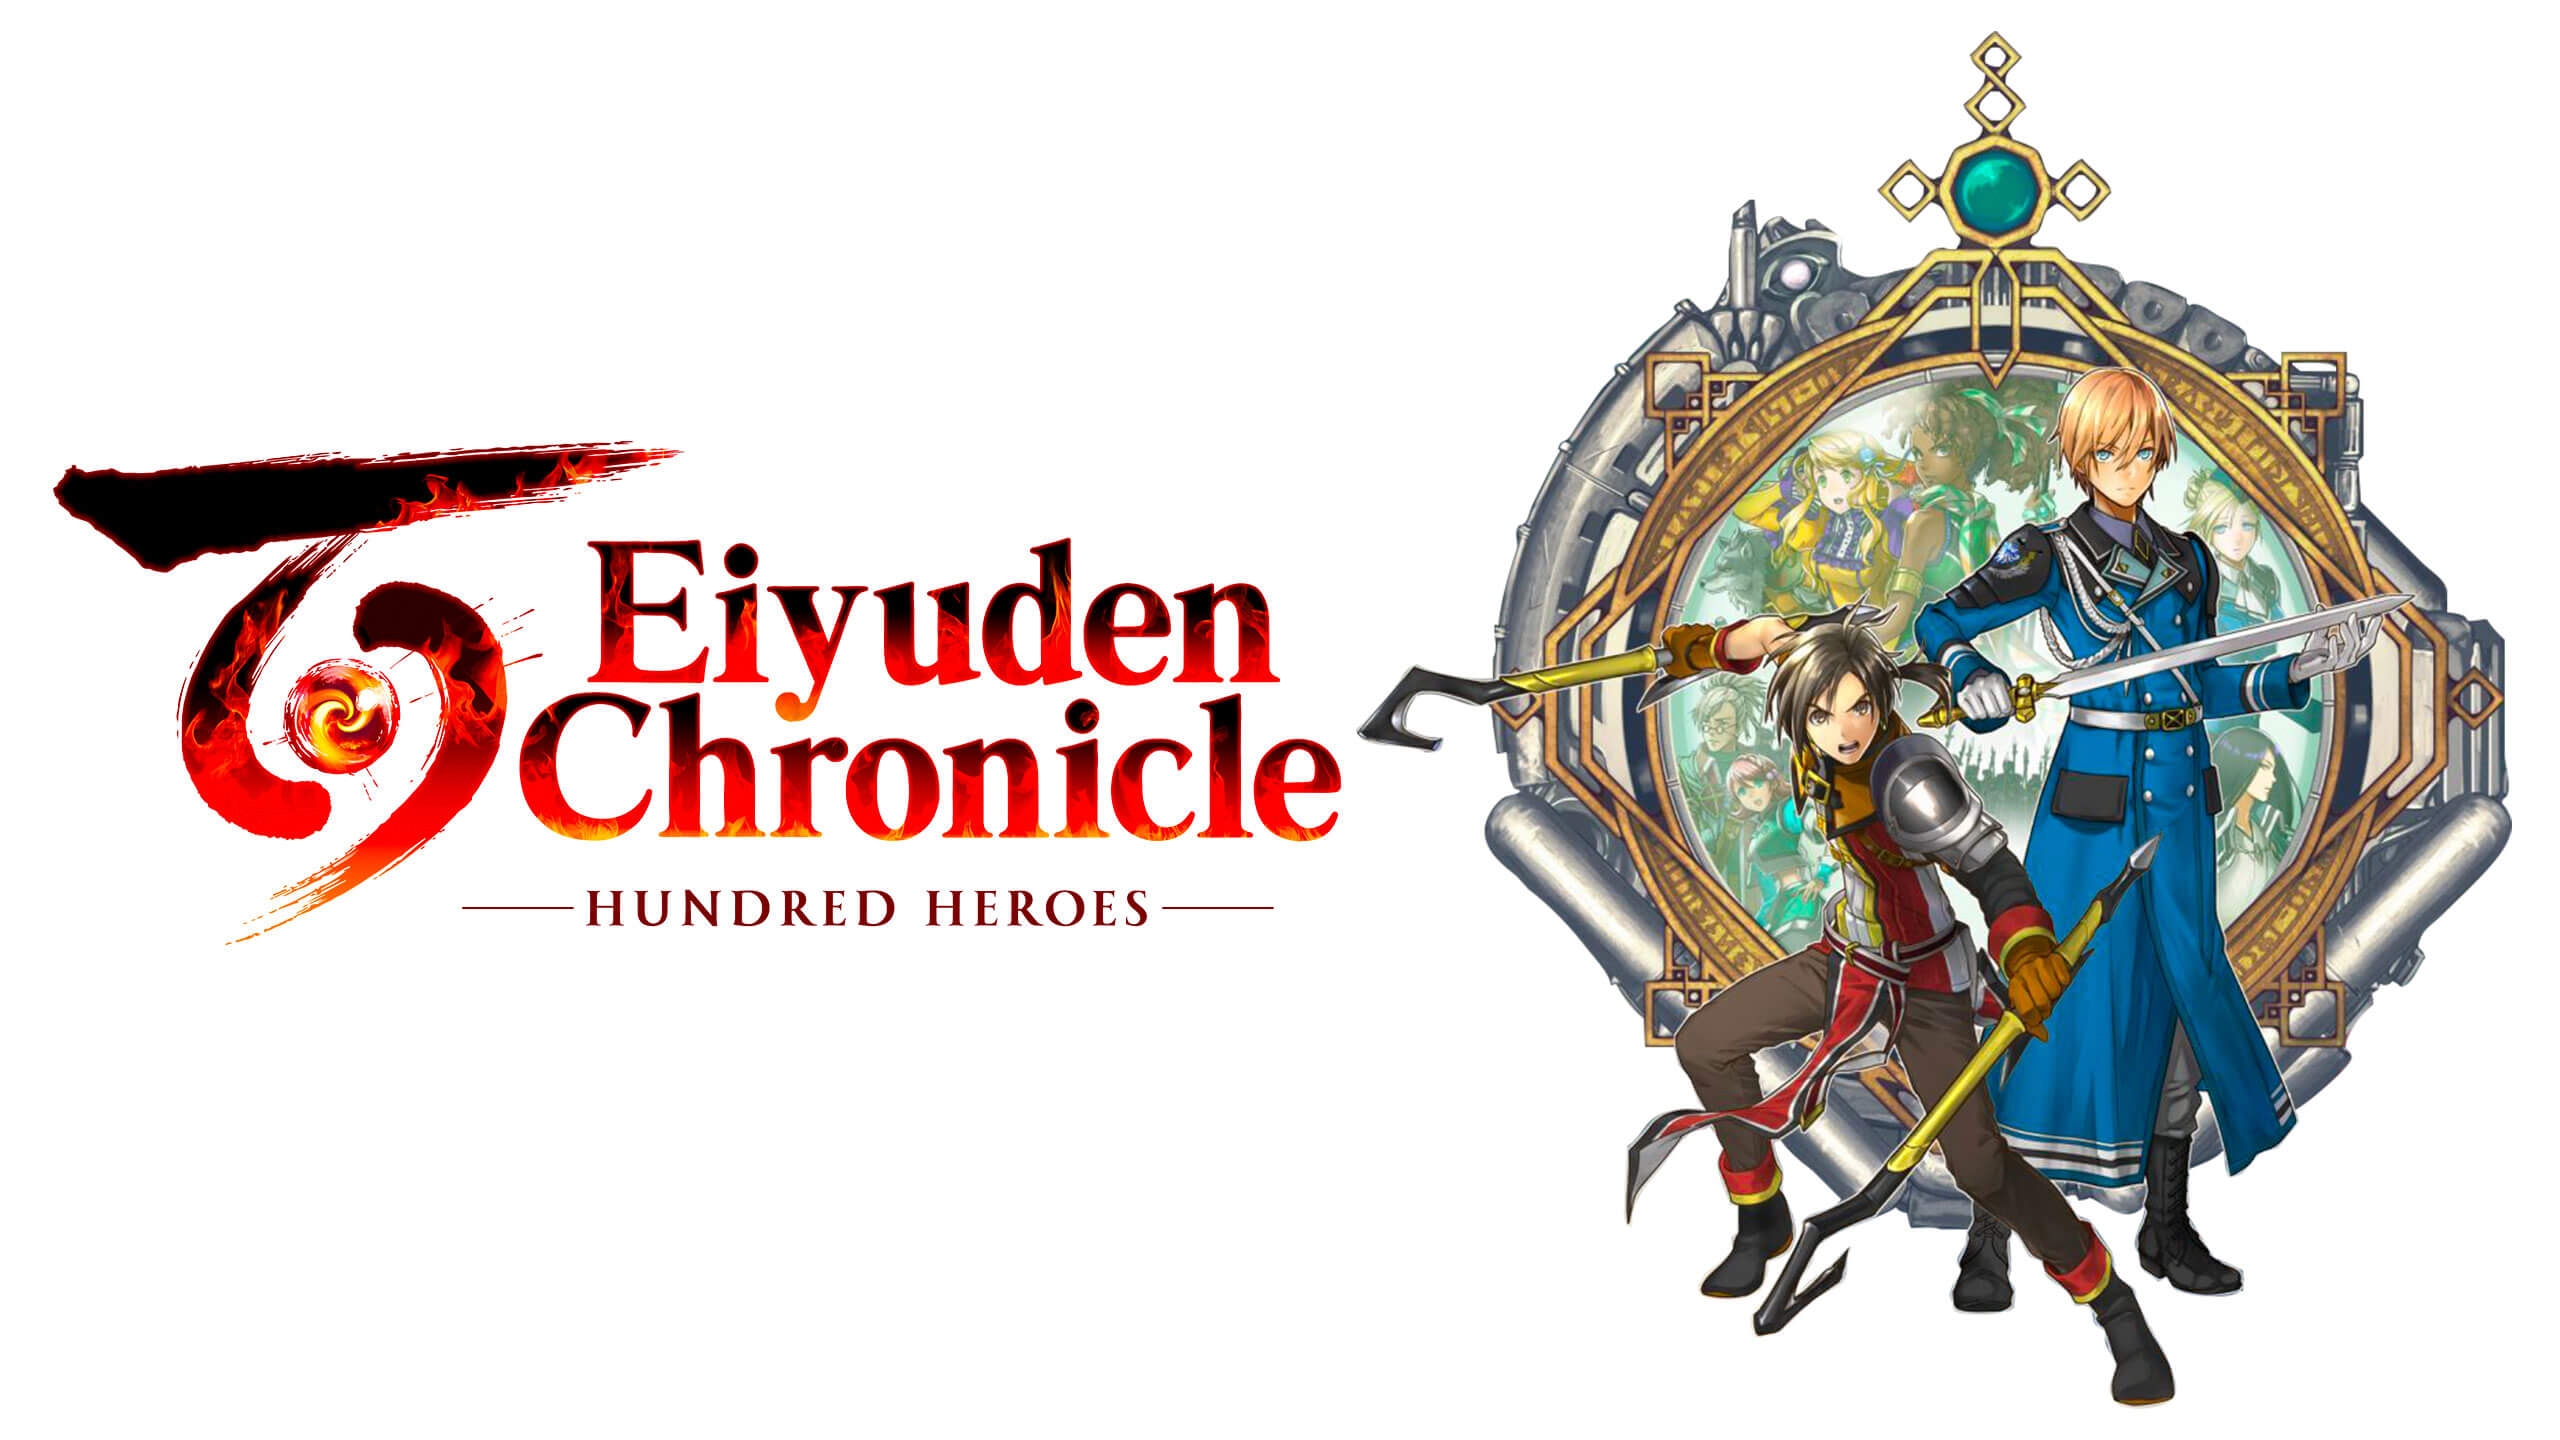 eiyuden-chronicle-hundred-heroes-pc-game-steam-europe-cover.jpg